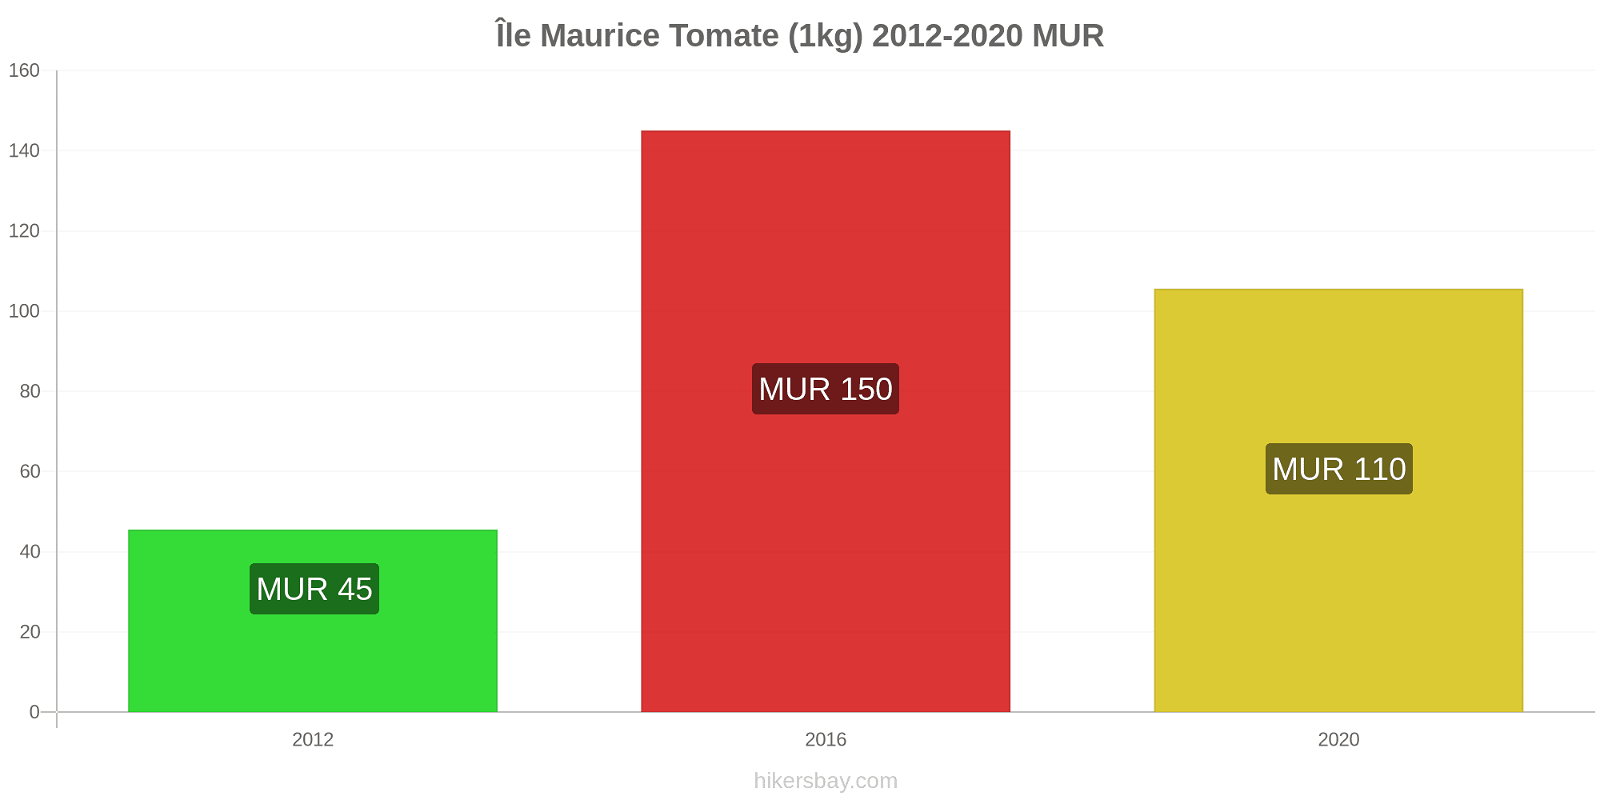 Île Maurice changements de prix Tomate (1kg) hikersbay.com